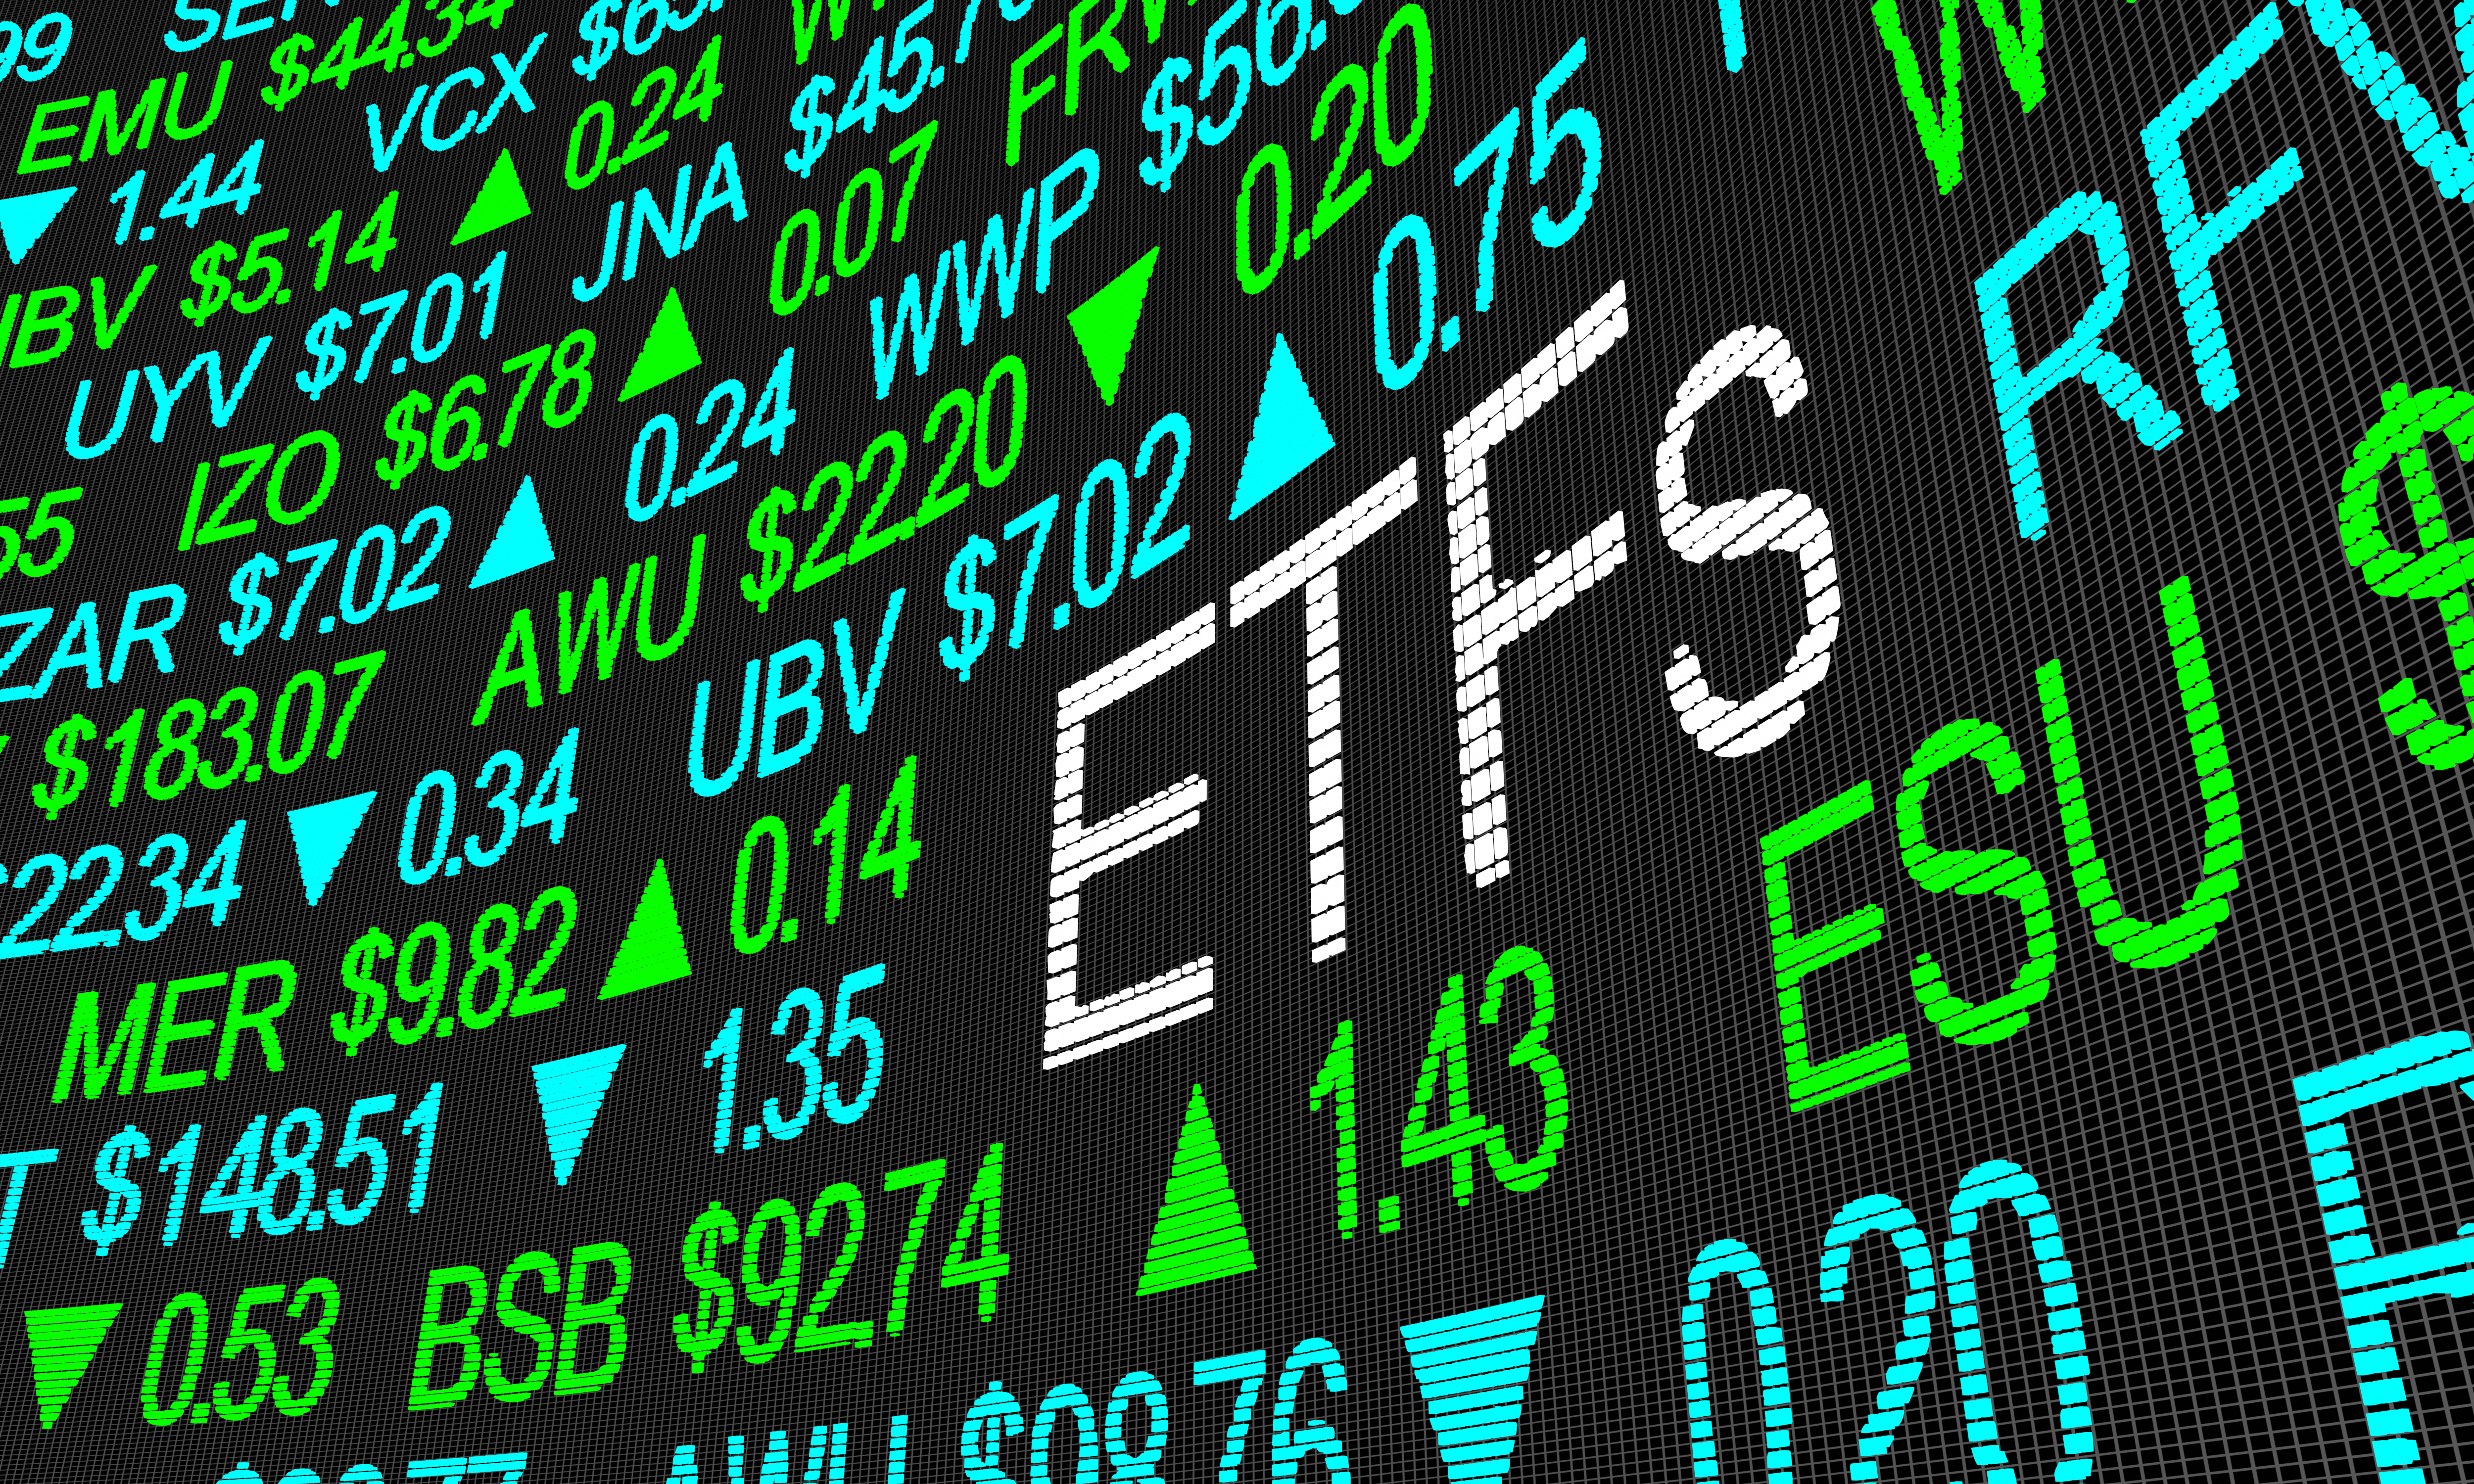 ETFs on stock exchange board